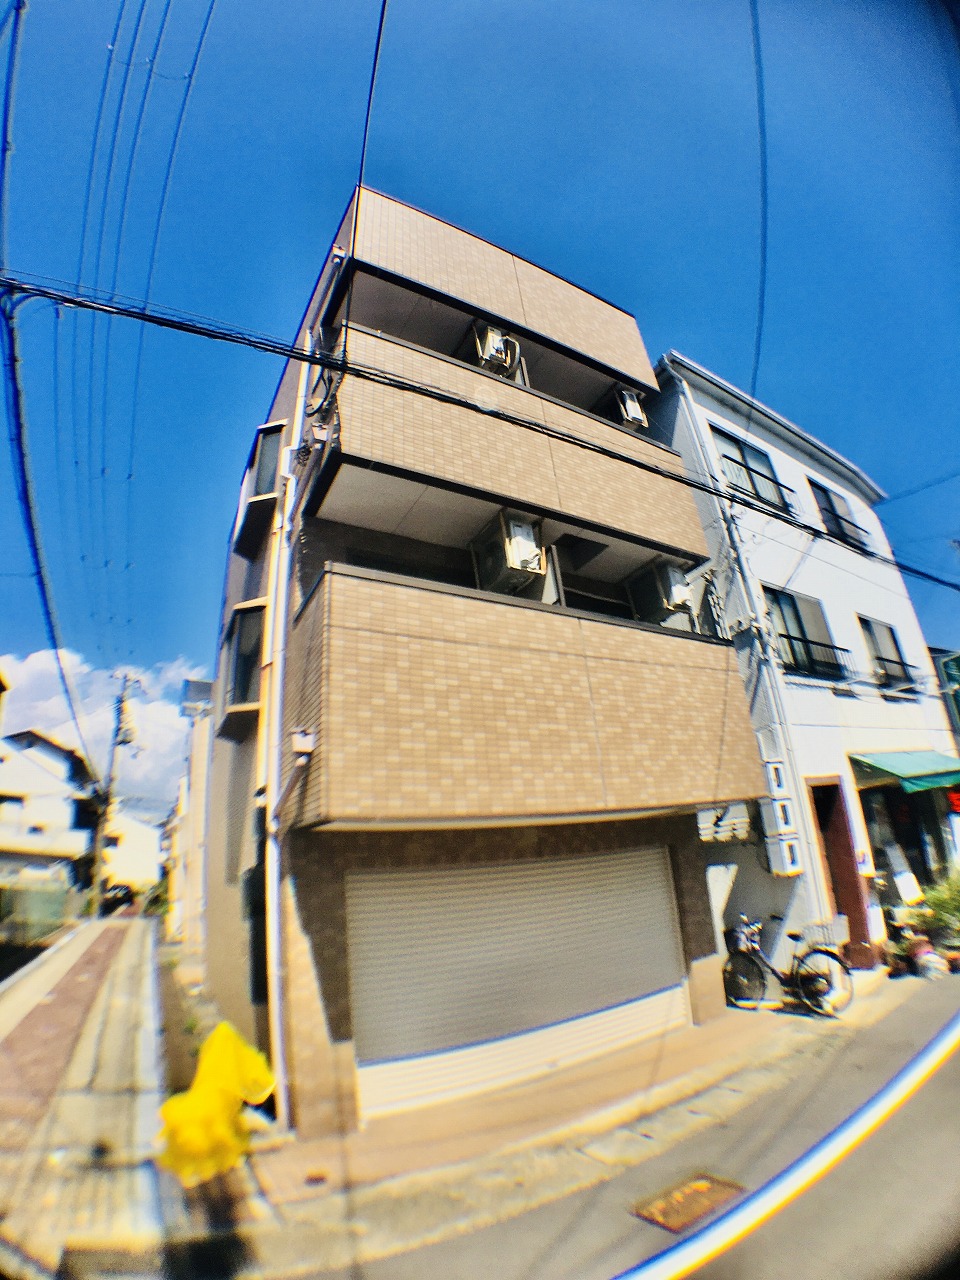 神戸市長田区本庄町のマンションの建物外観